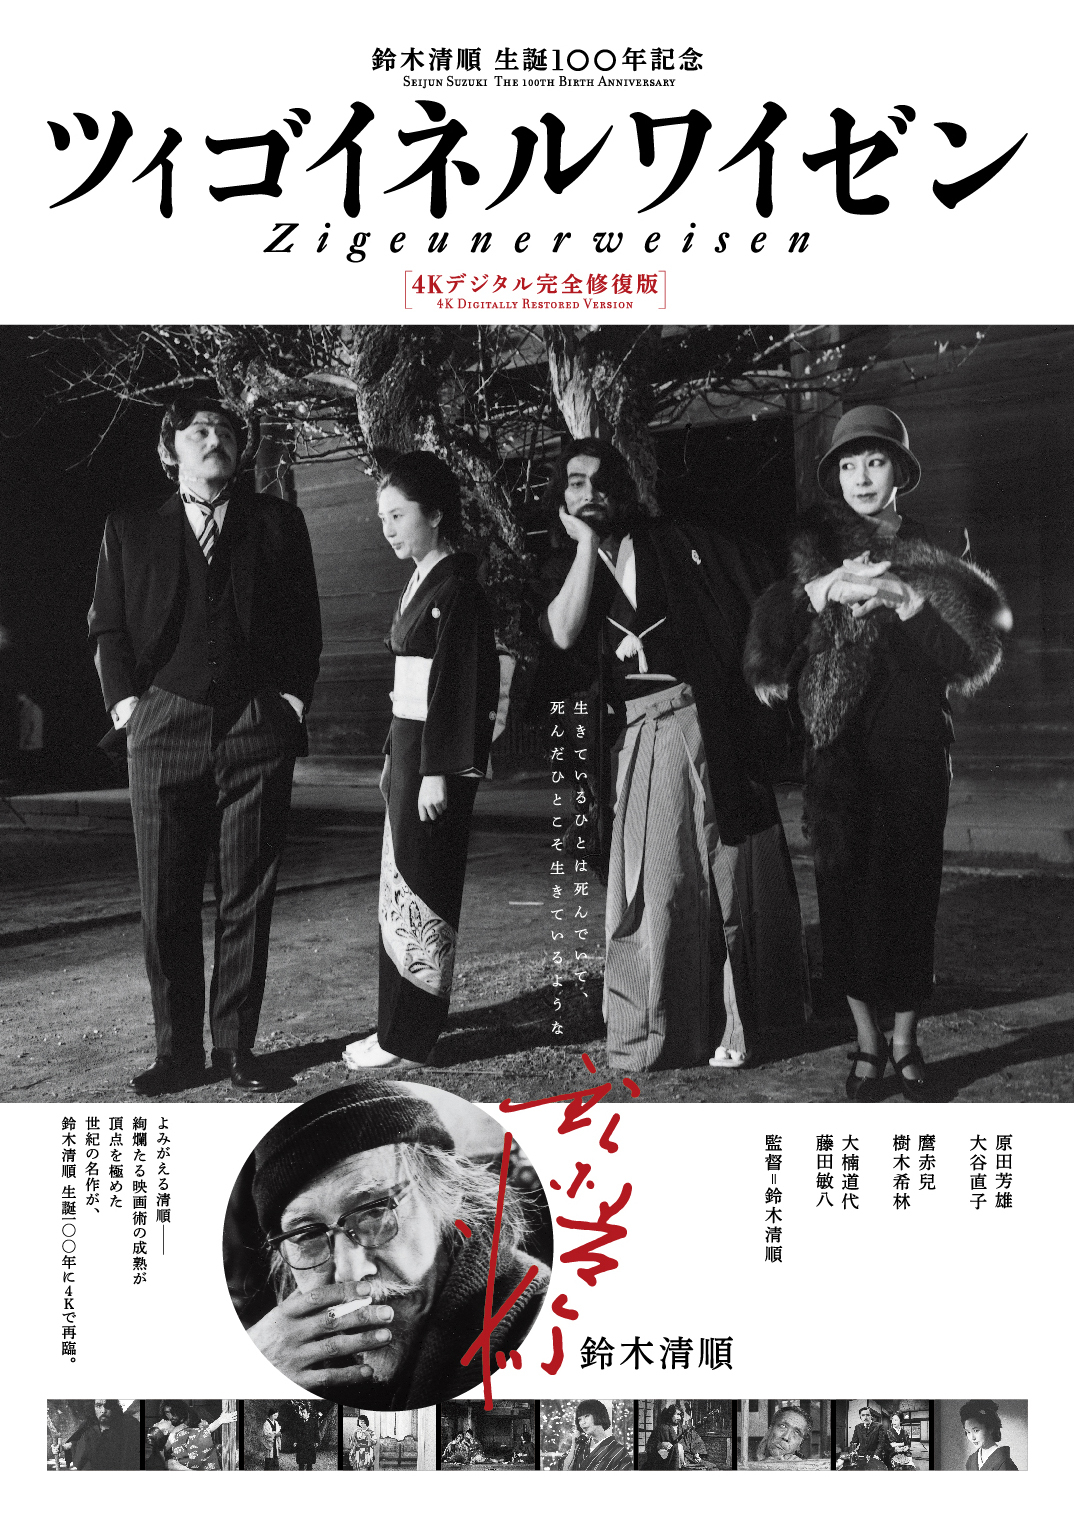 鈴木清順生誕100年記念「ツィゴイネルワイゼン」4Kデジタル完全修復版、4月15日から先行限定公開